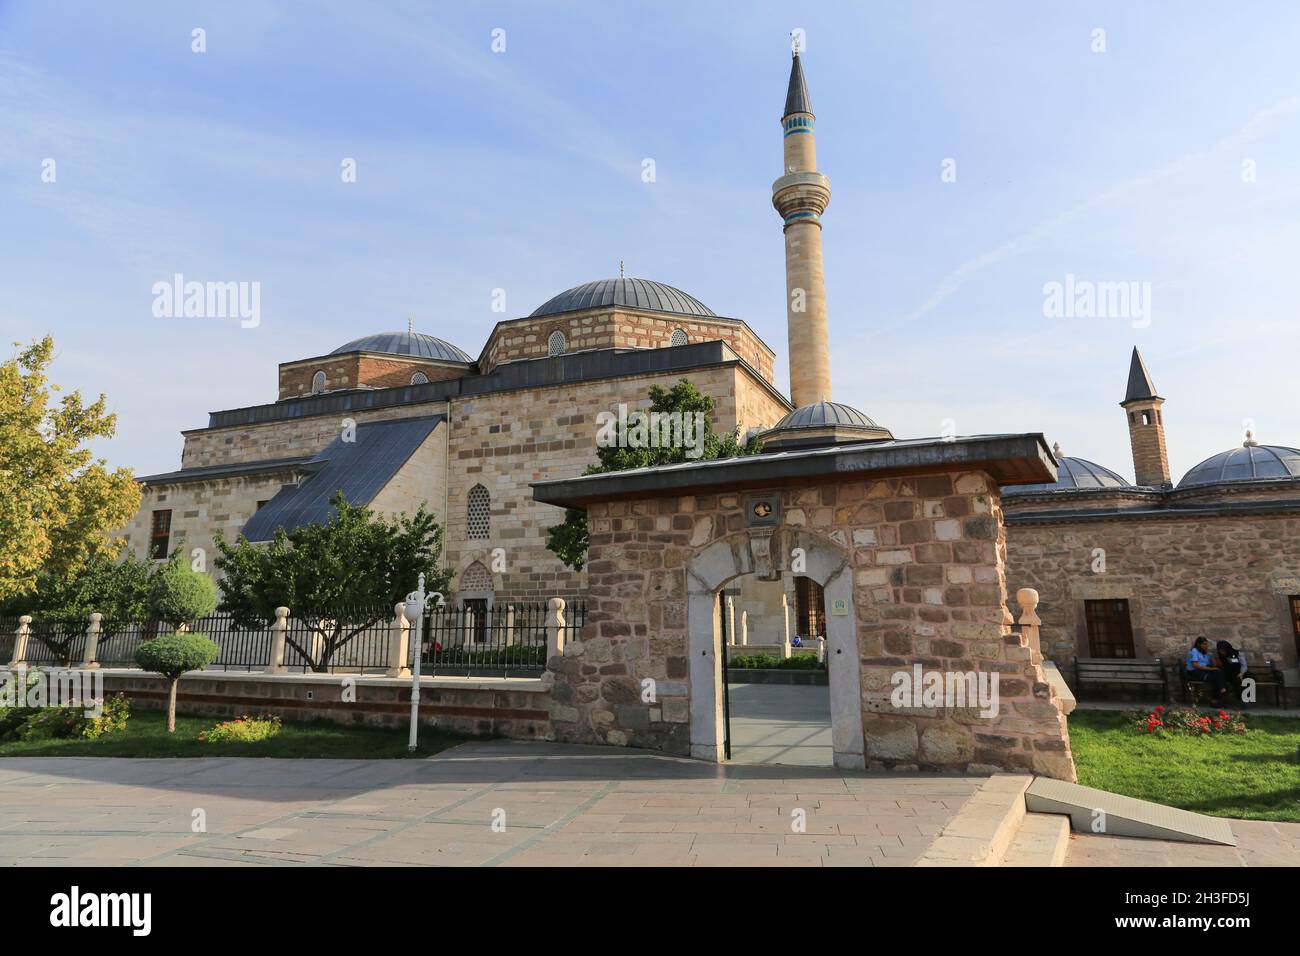 Le Musée Mevlana est situé à Caratay, Konya, Turquie et expose des objets d'art, manuscrits, tablettes et cetera Banque D'Images